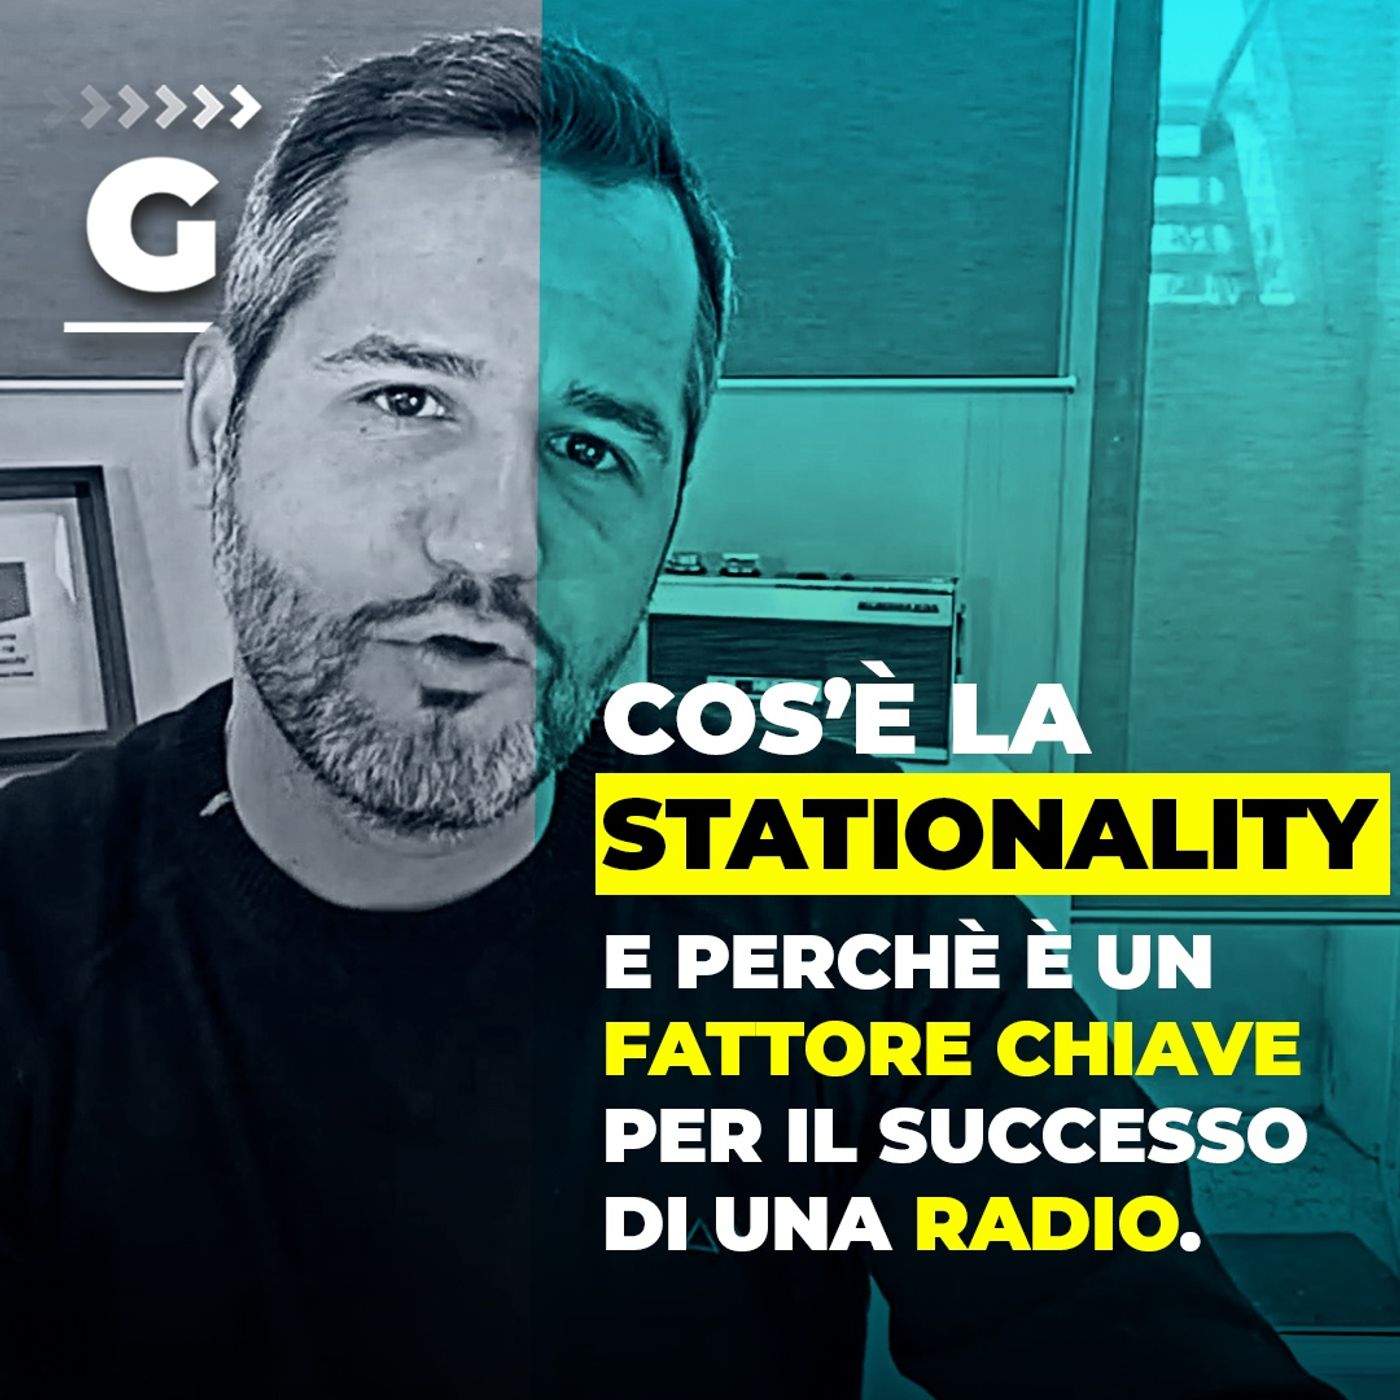 Cos'è la Stationality di una Radio?